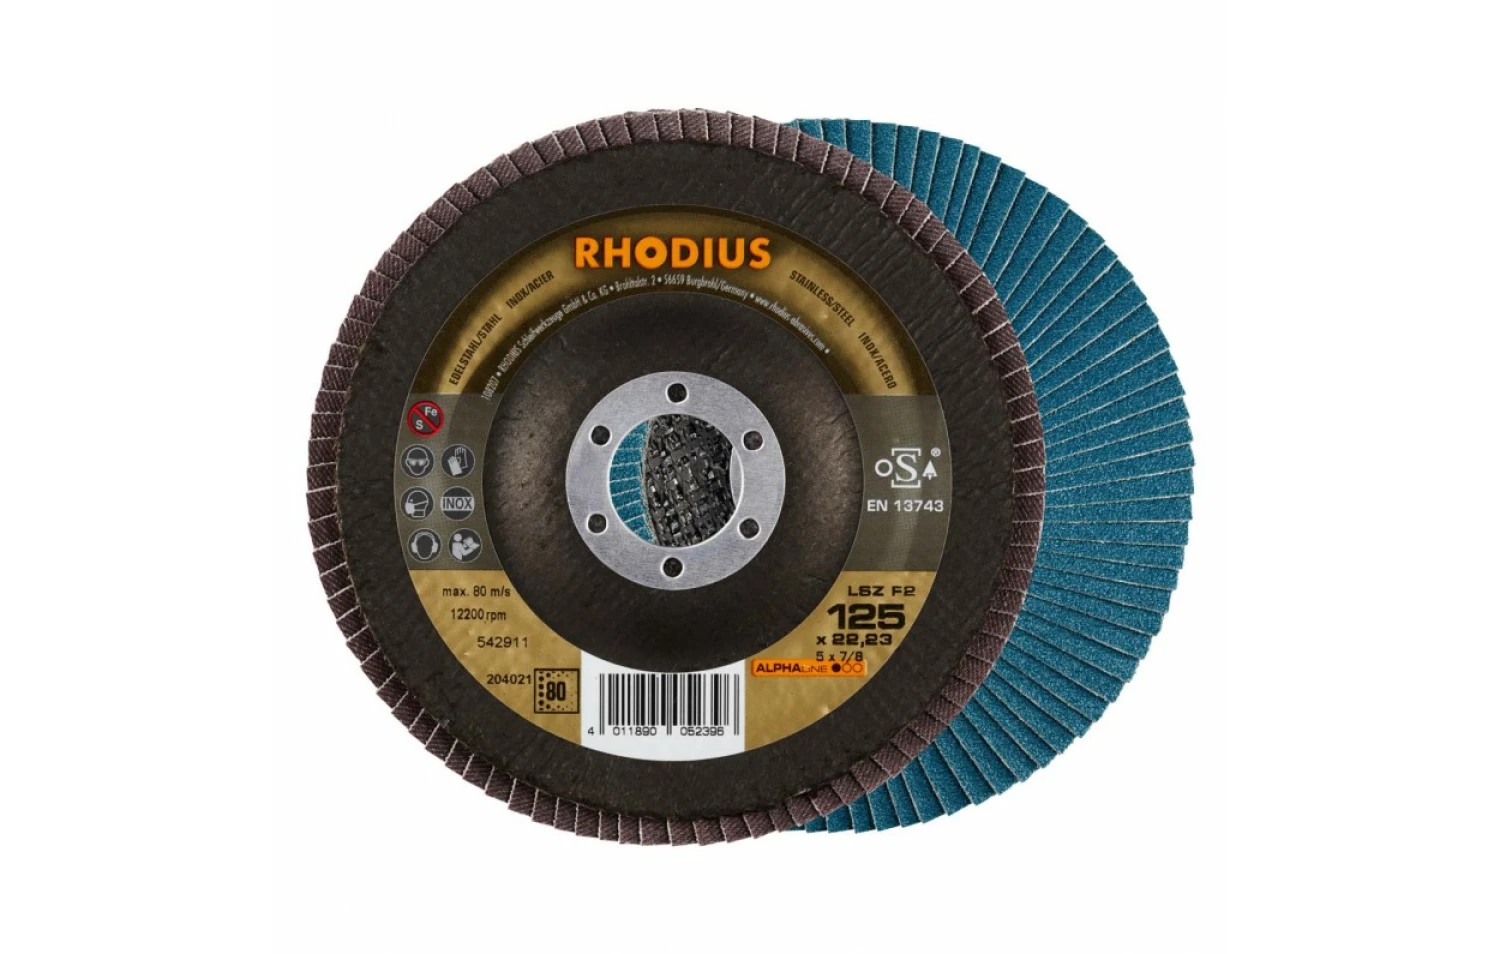 Rhodius 204021-10 Disques à lamelles